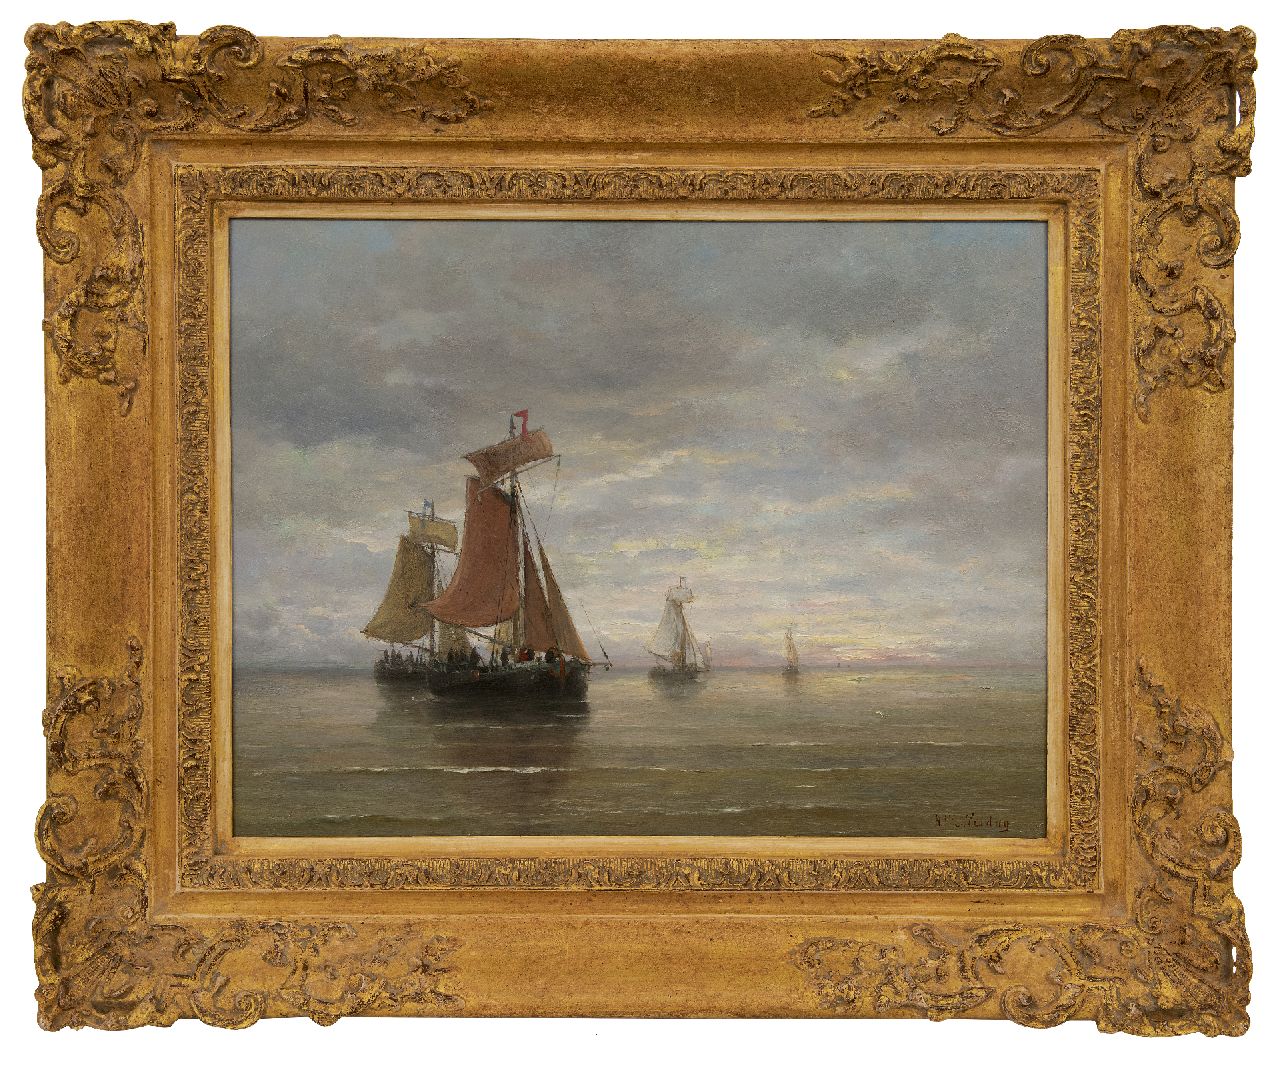 Mesdag H.W.  | Hendrik Willem Mesdag | Schilderijen te koop aangeboden | Bomschuiten op kalme zee, olieverf op paneel 39,5 x 51,0 cm, gesigneerd rechtsonder